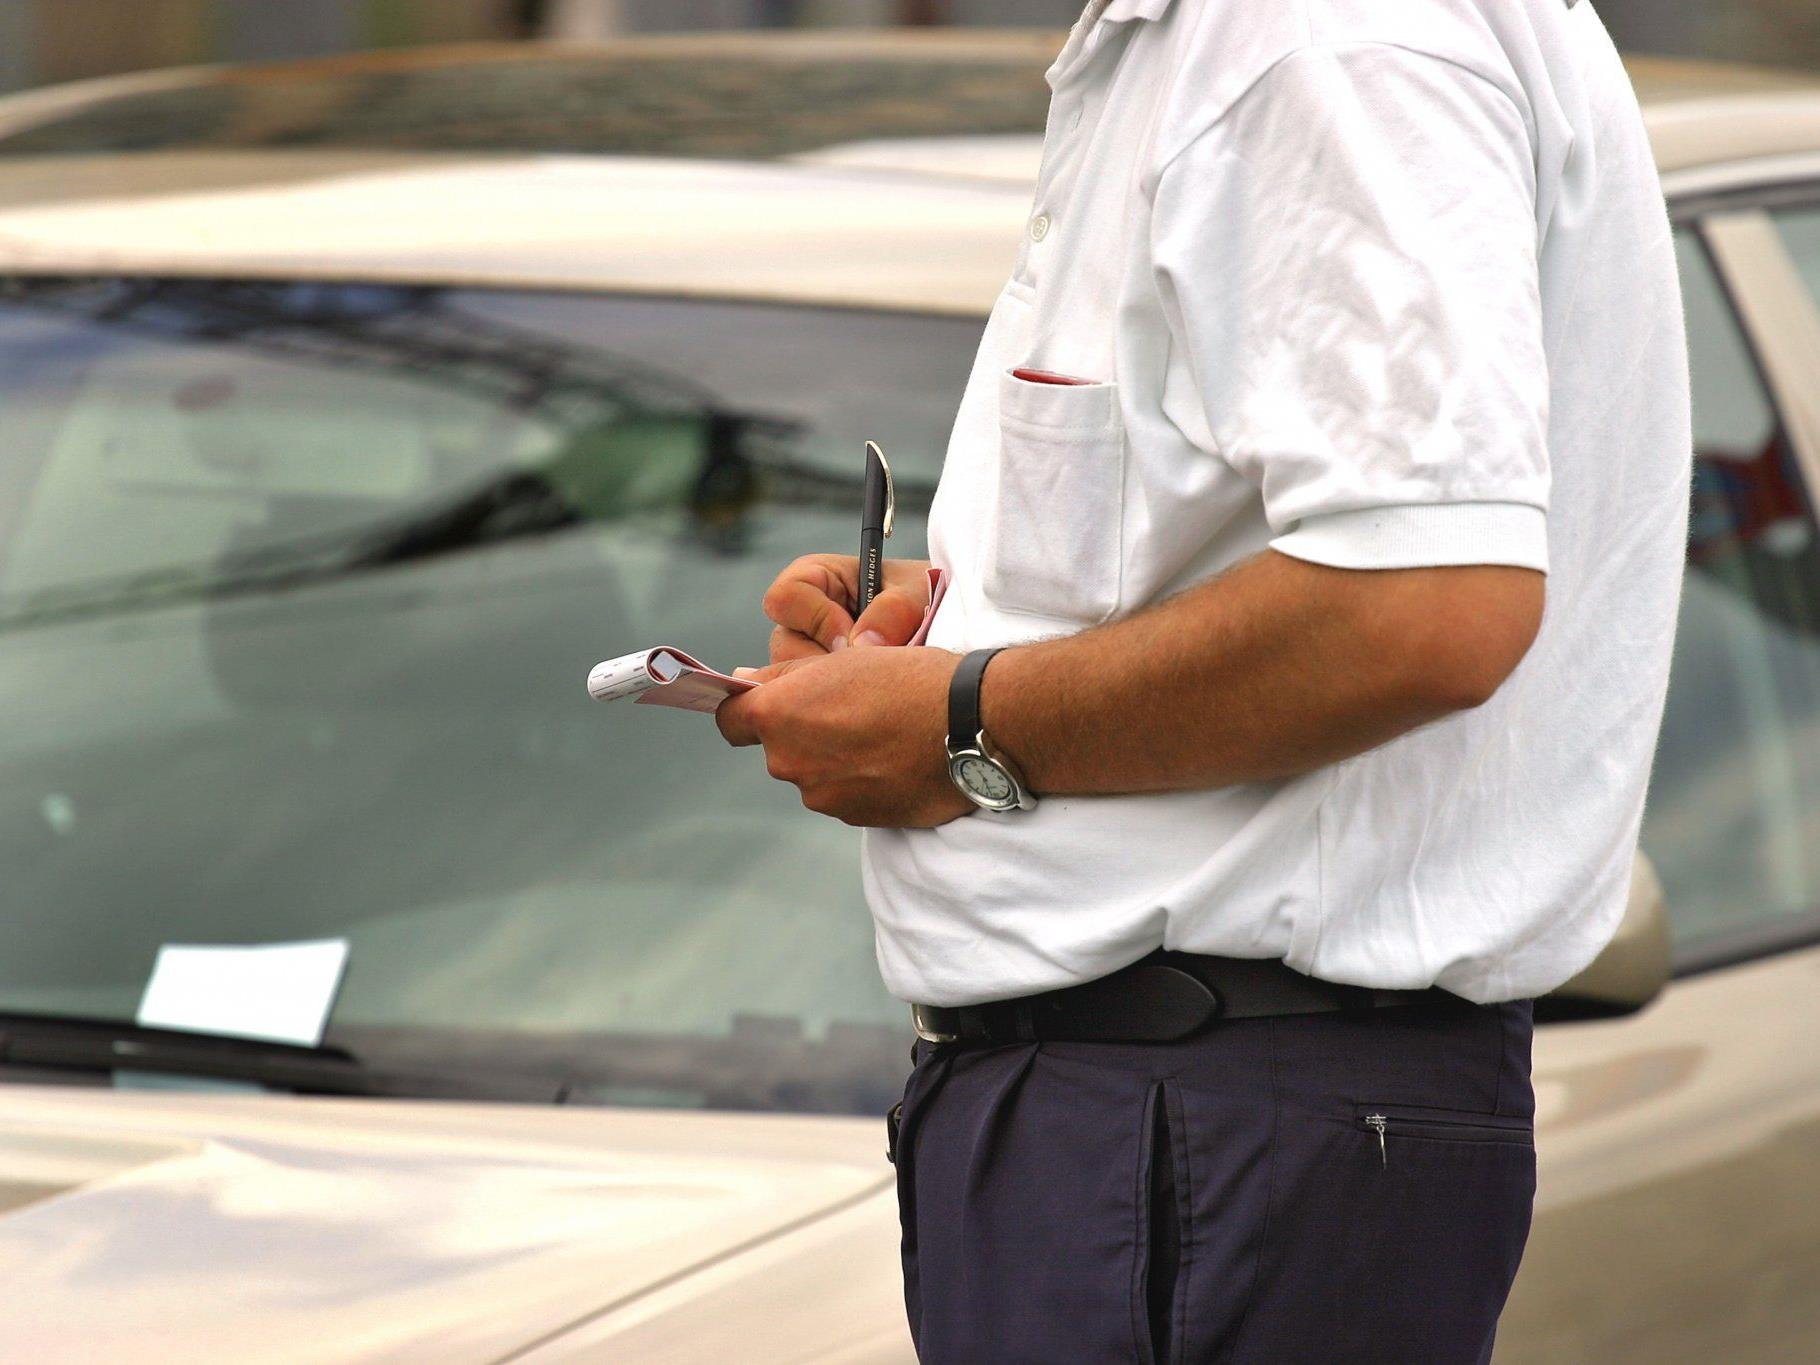 Parkraumüberwachung neu: Ab 1. September 2012 werden die "Parksheriffs" nurnoch von der Polizei gestellt.